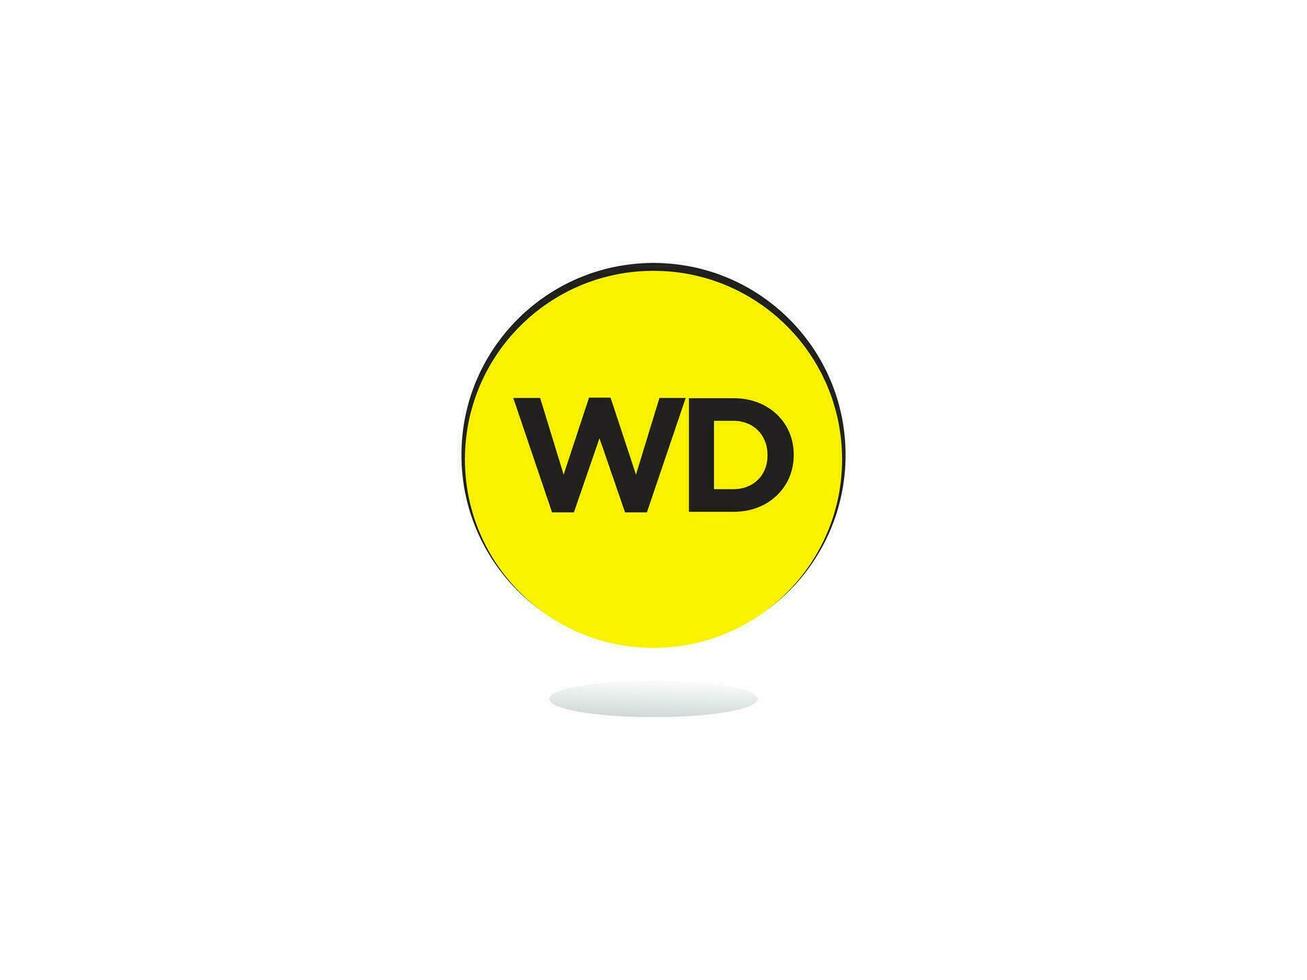 moderno wd logo carta, inicial wd logo icono vector